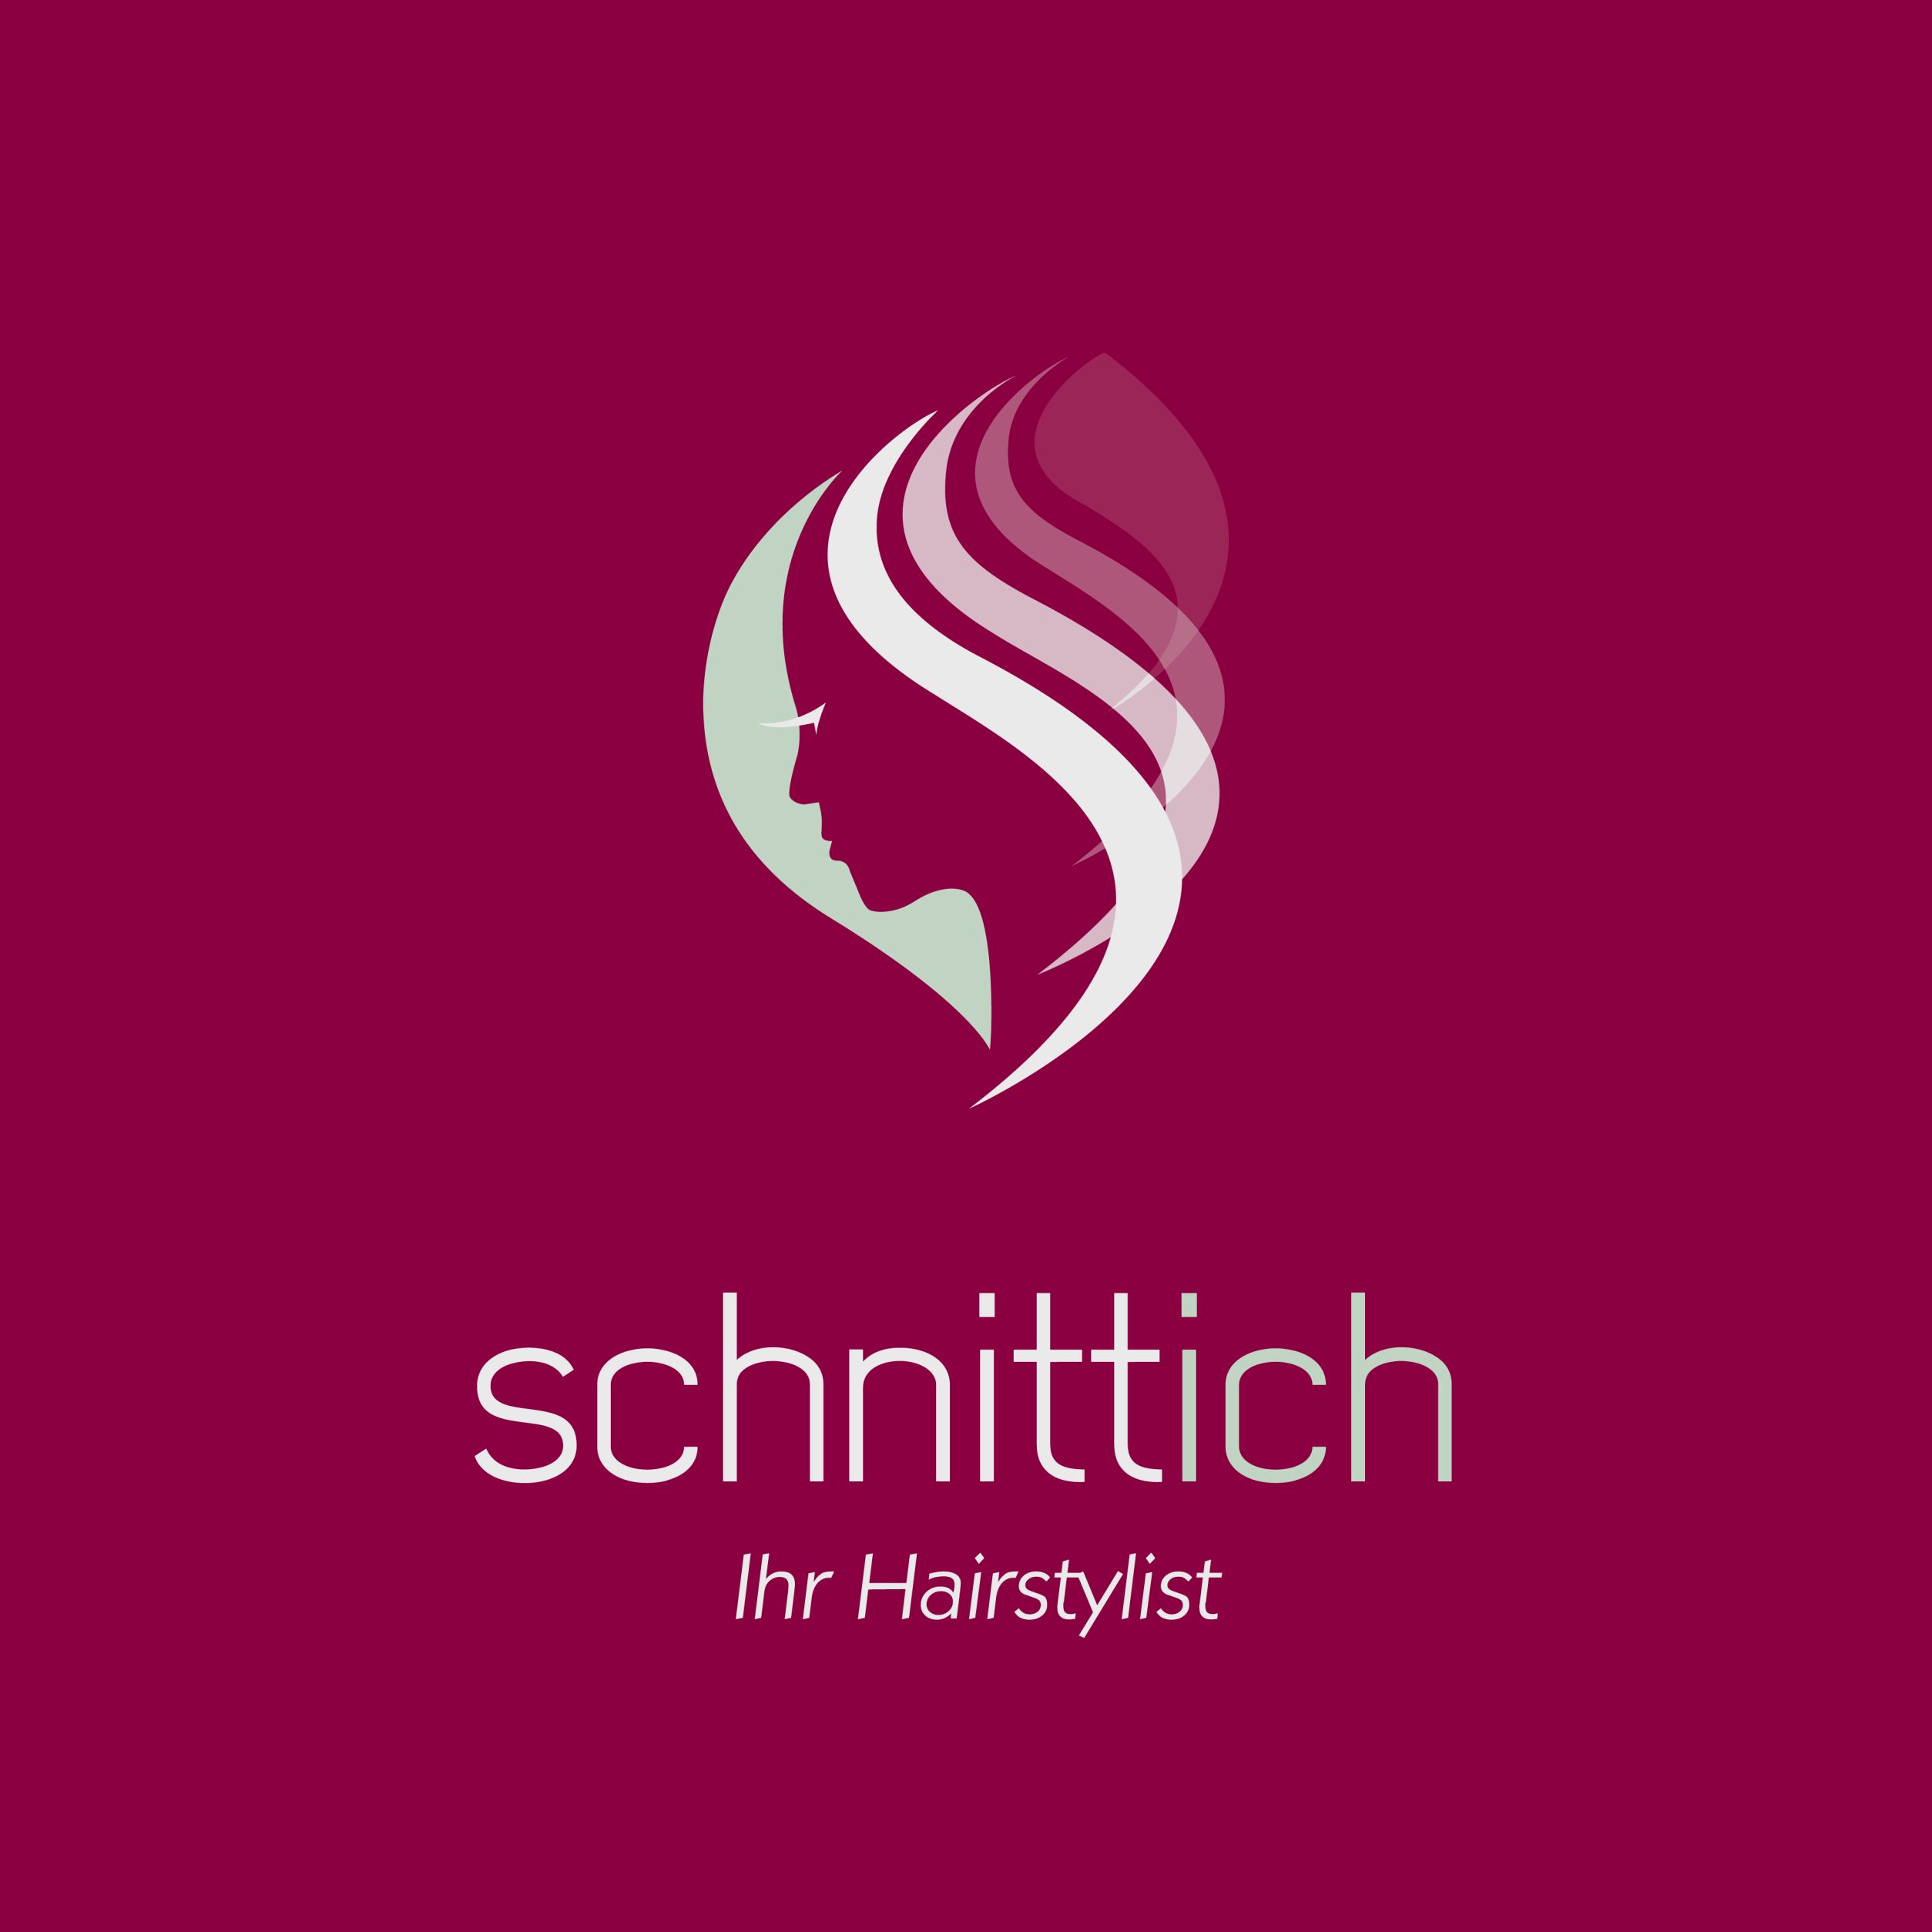 Schnittich - Ihr Hairstylist